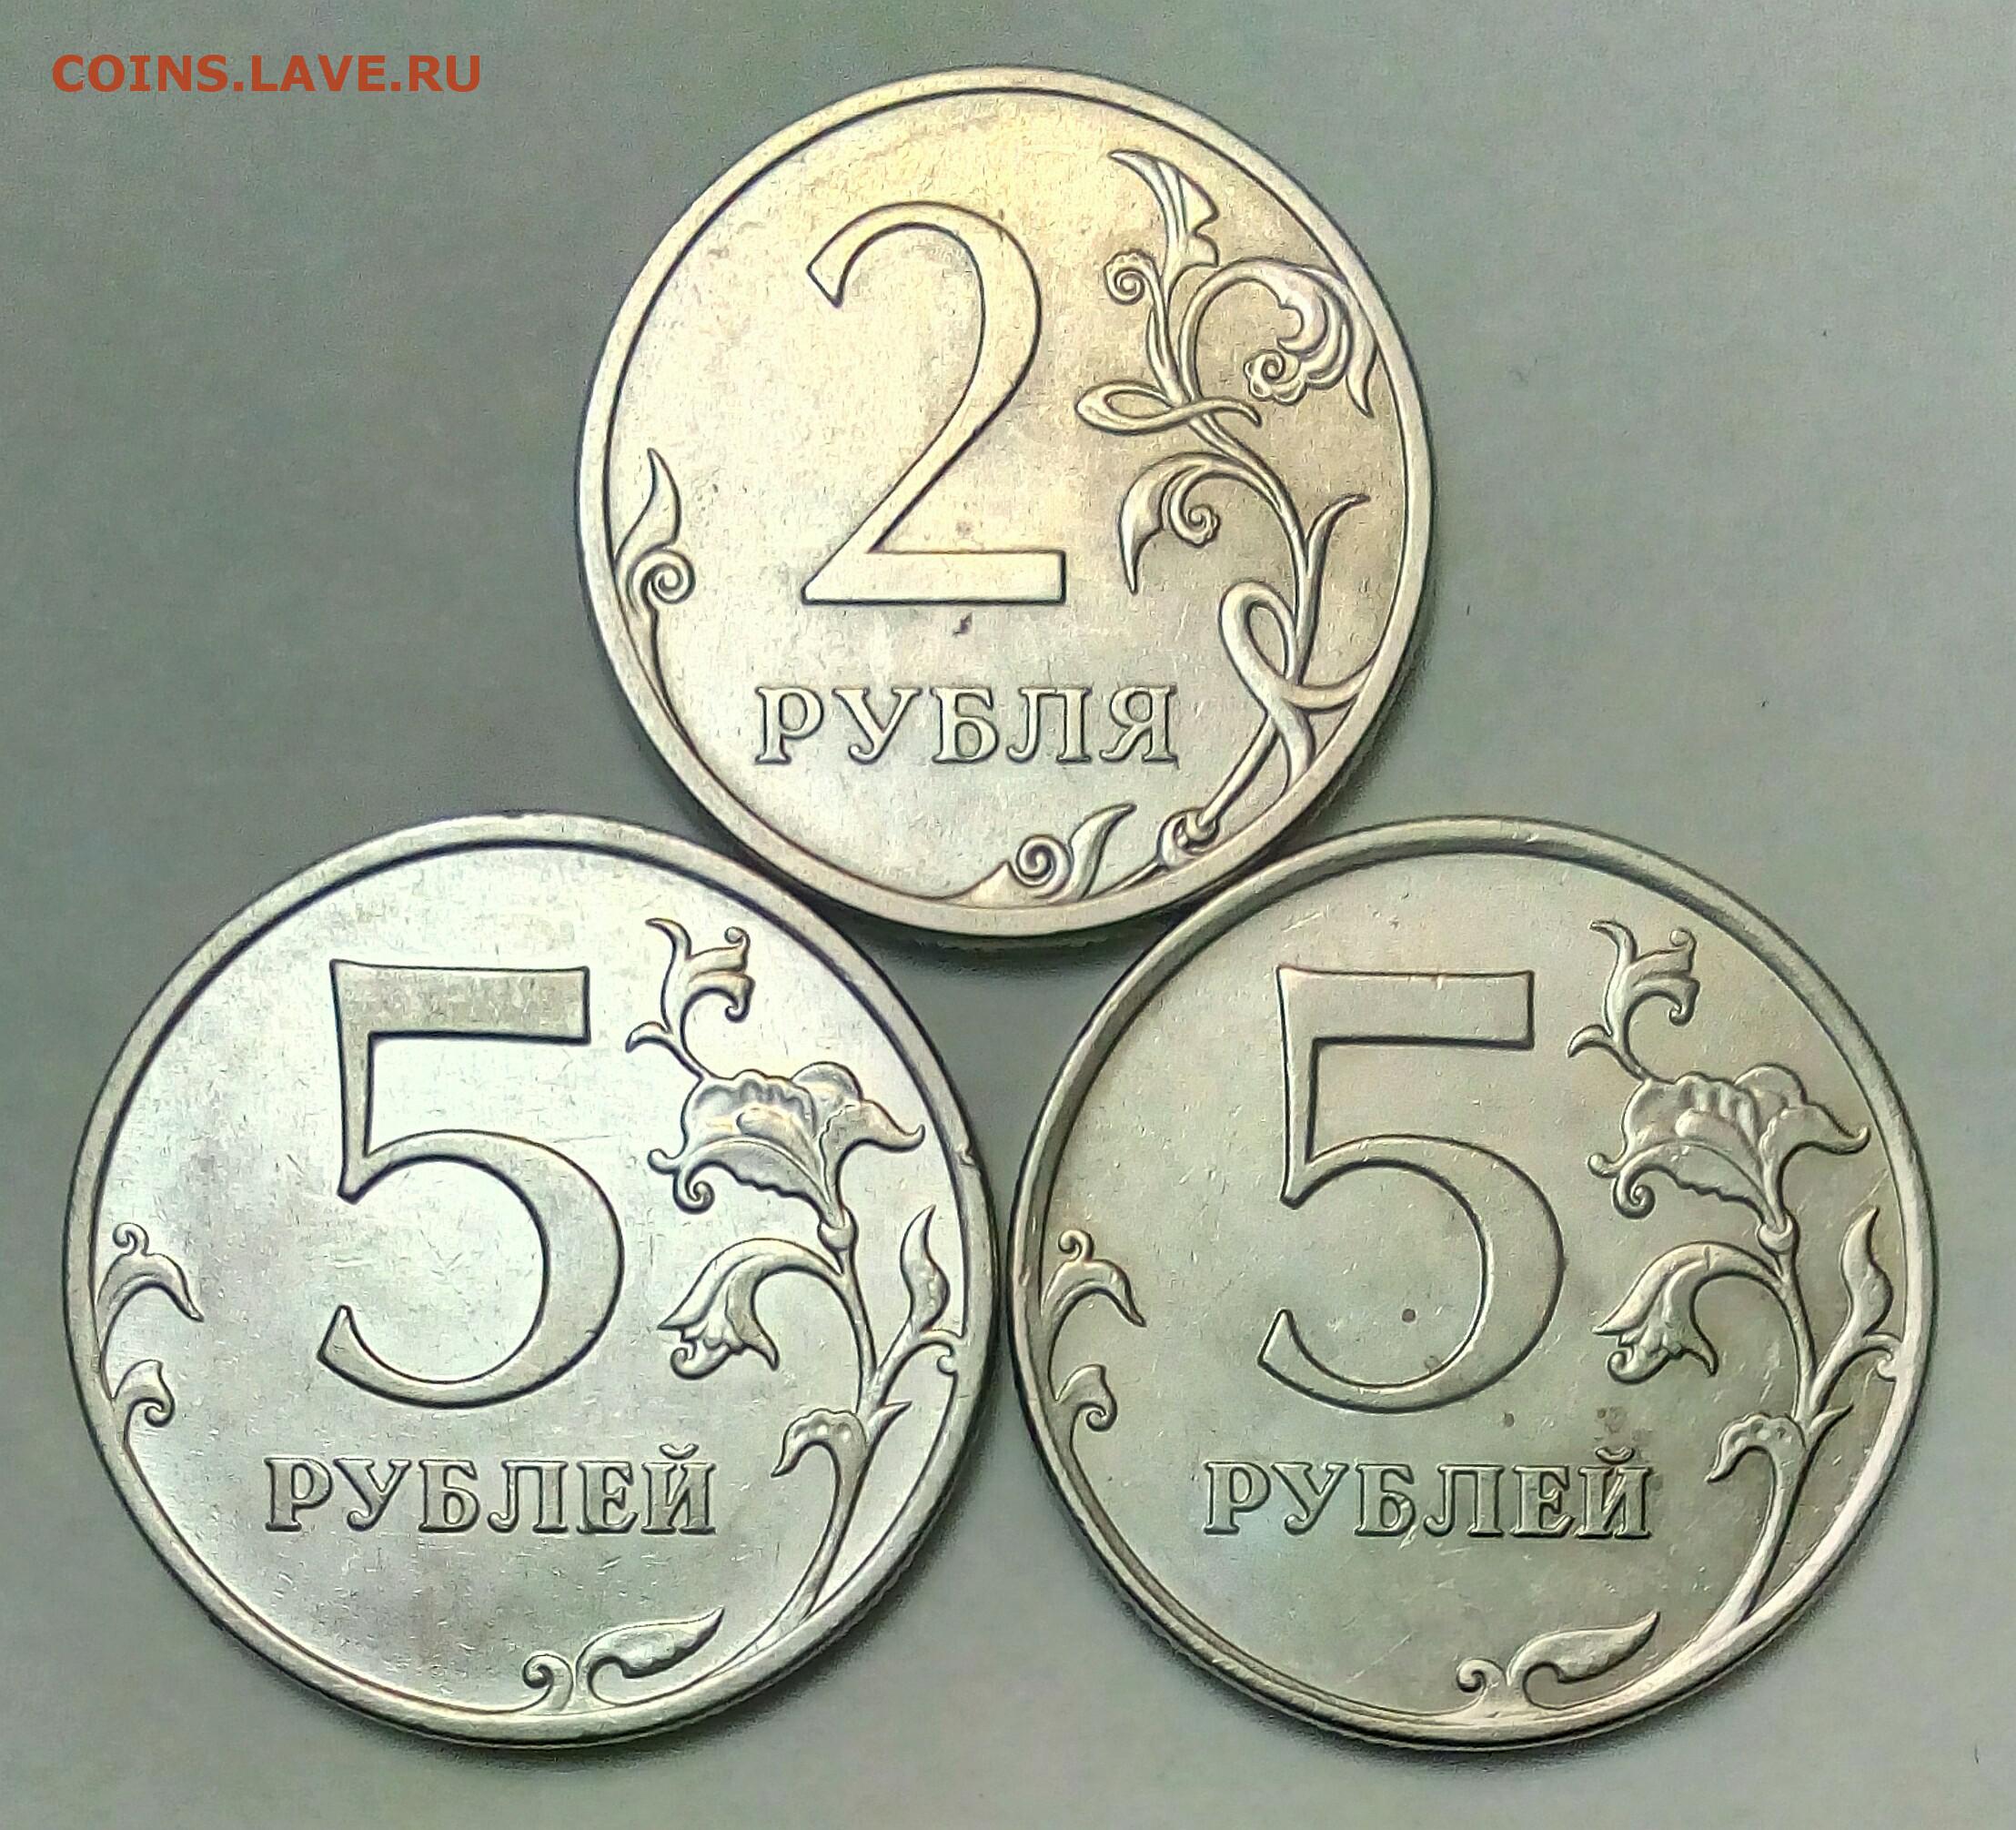 5 рублей бонус. 5 Рублей шт. 5.42. 5 Рублей шт.5.1. 5 Рублей 2013. 41 Рубль.